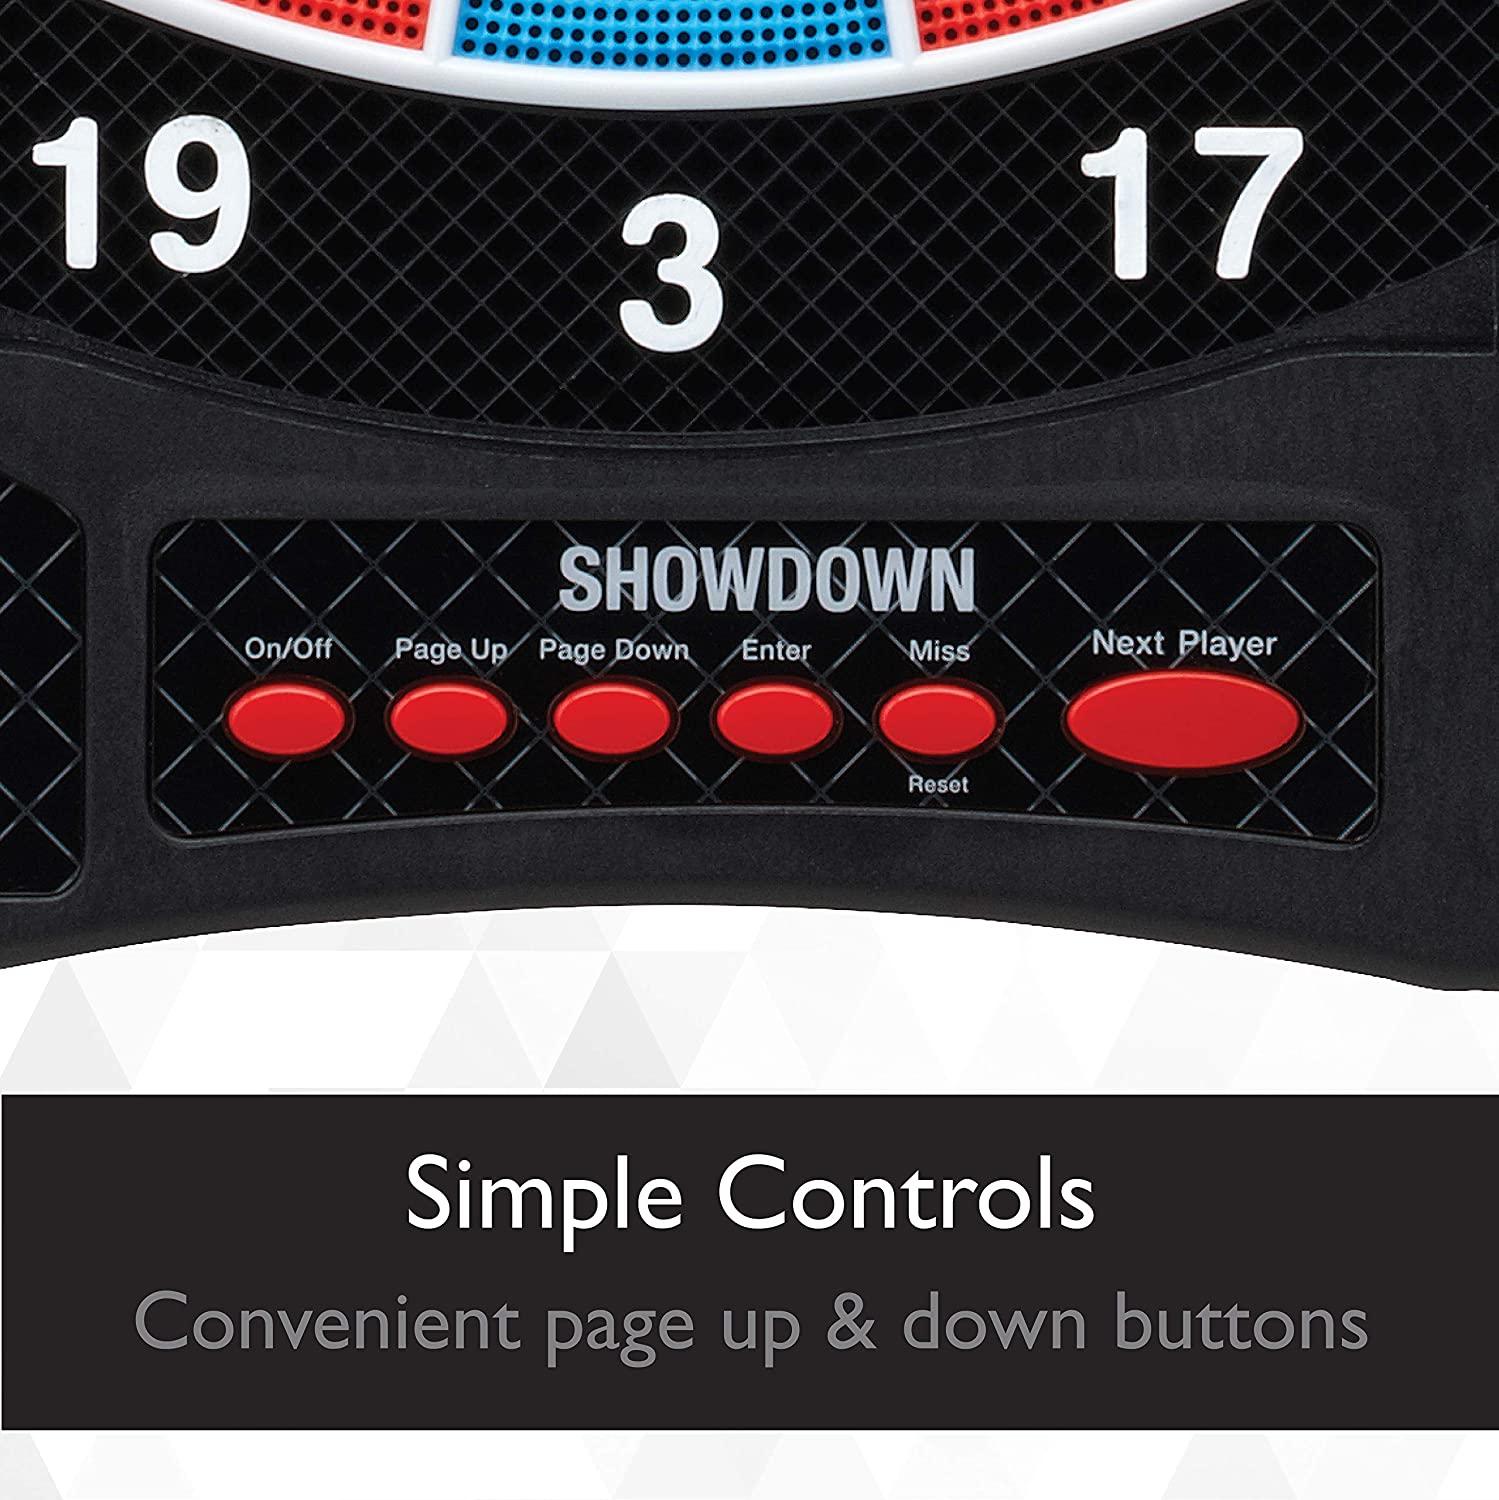 SpeedStacks Tournament Display Pro